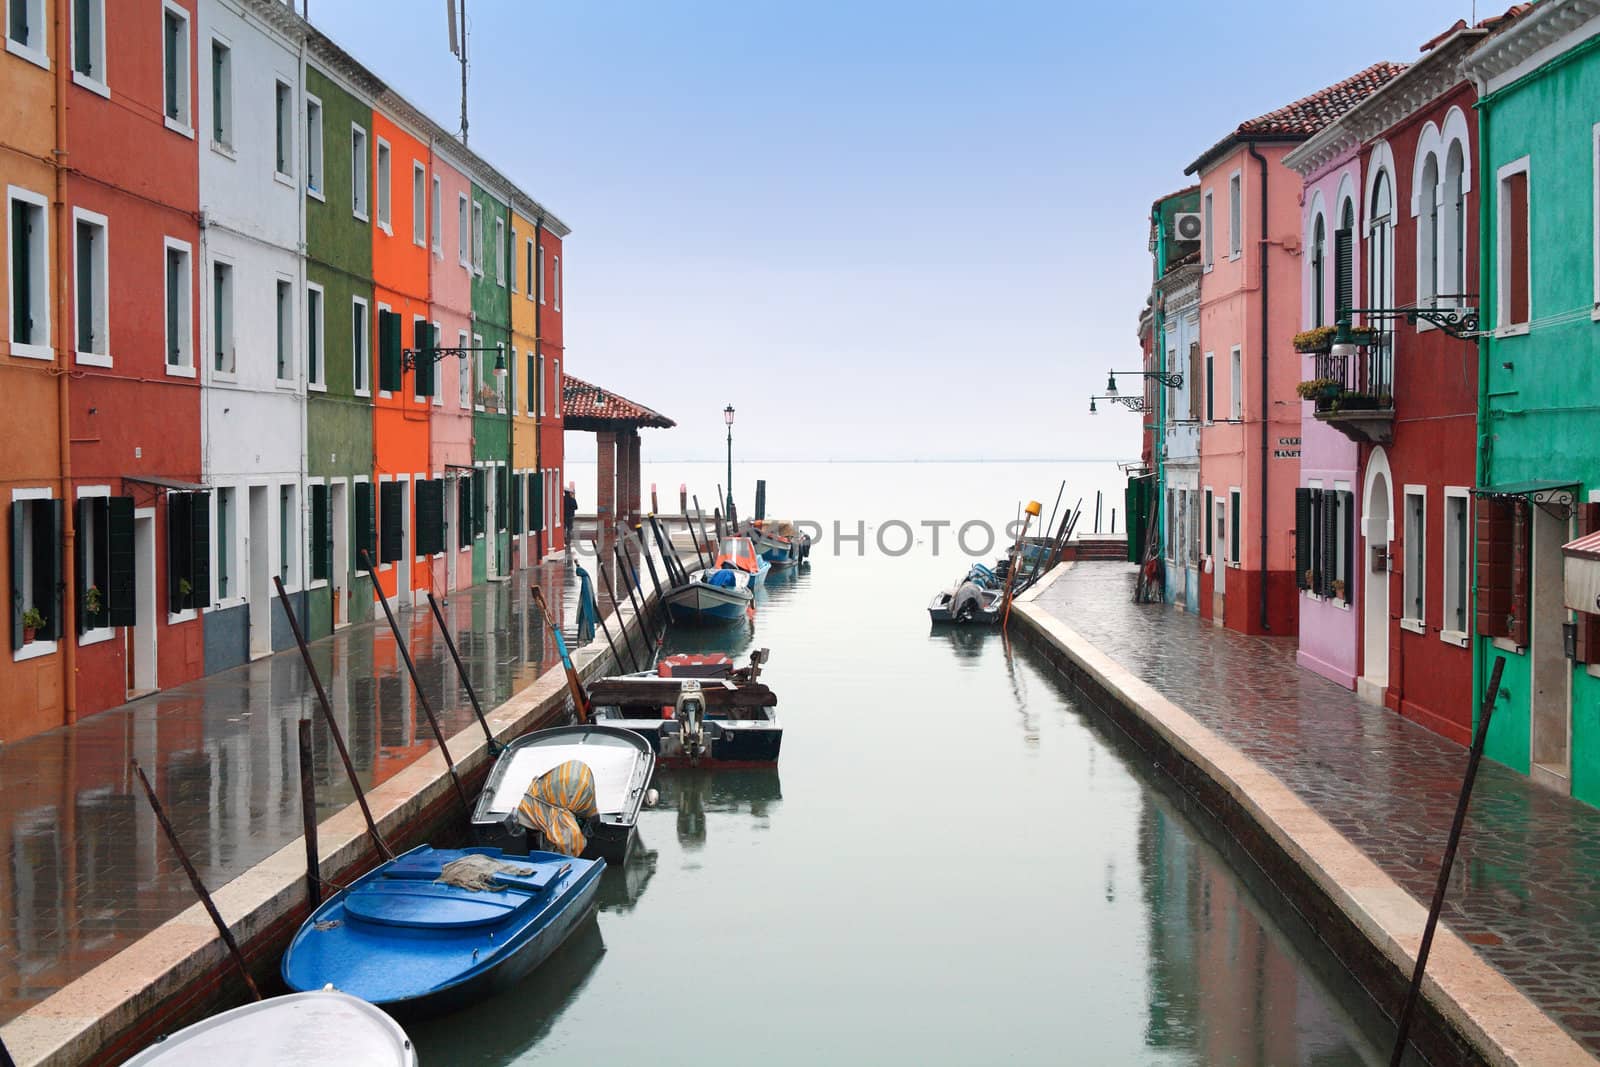 Italy, Venice: Burano Island by landon